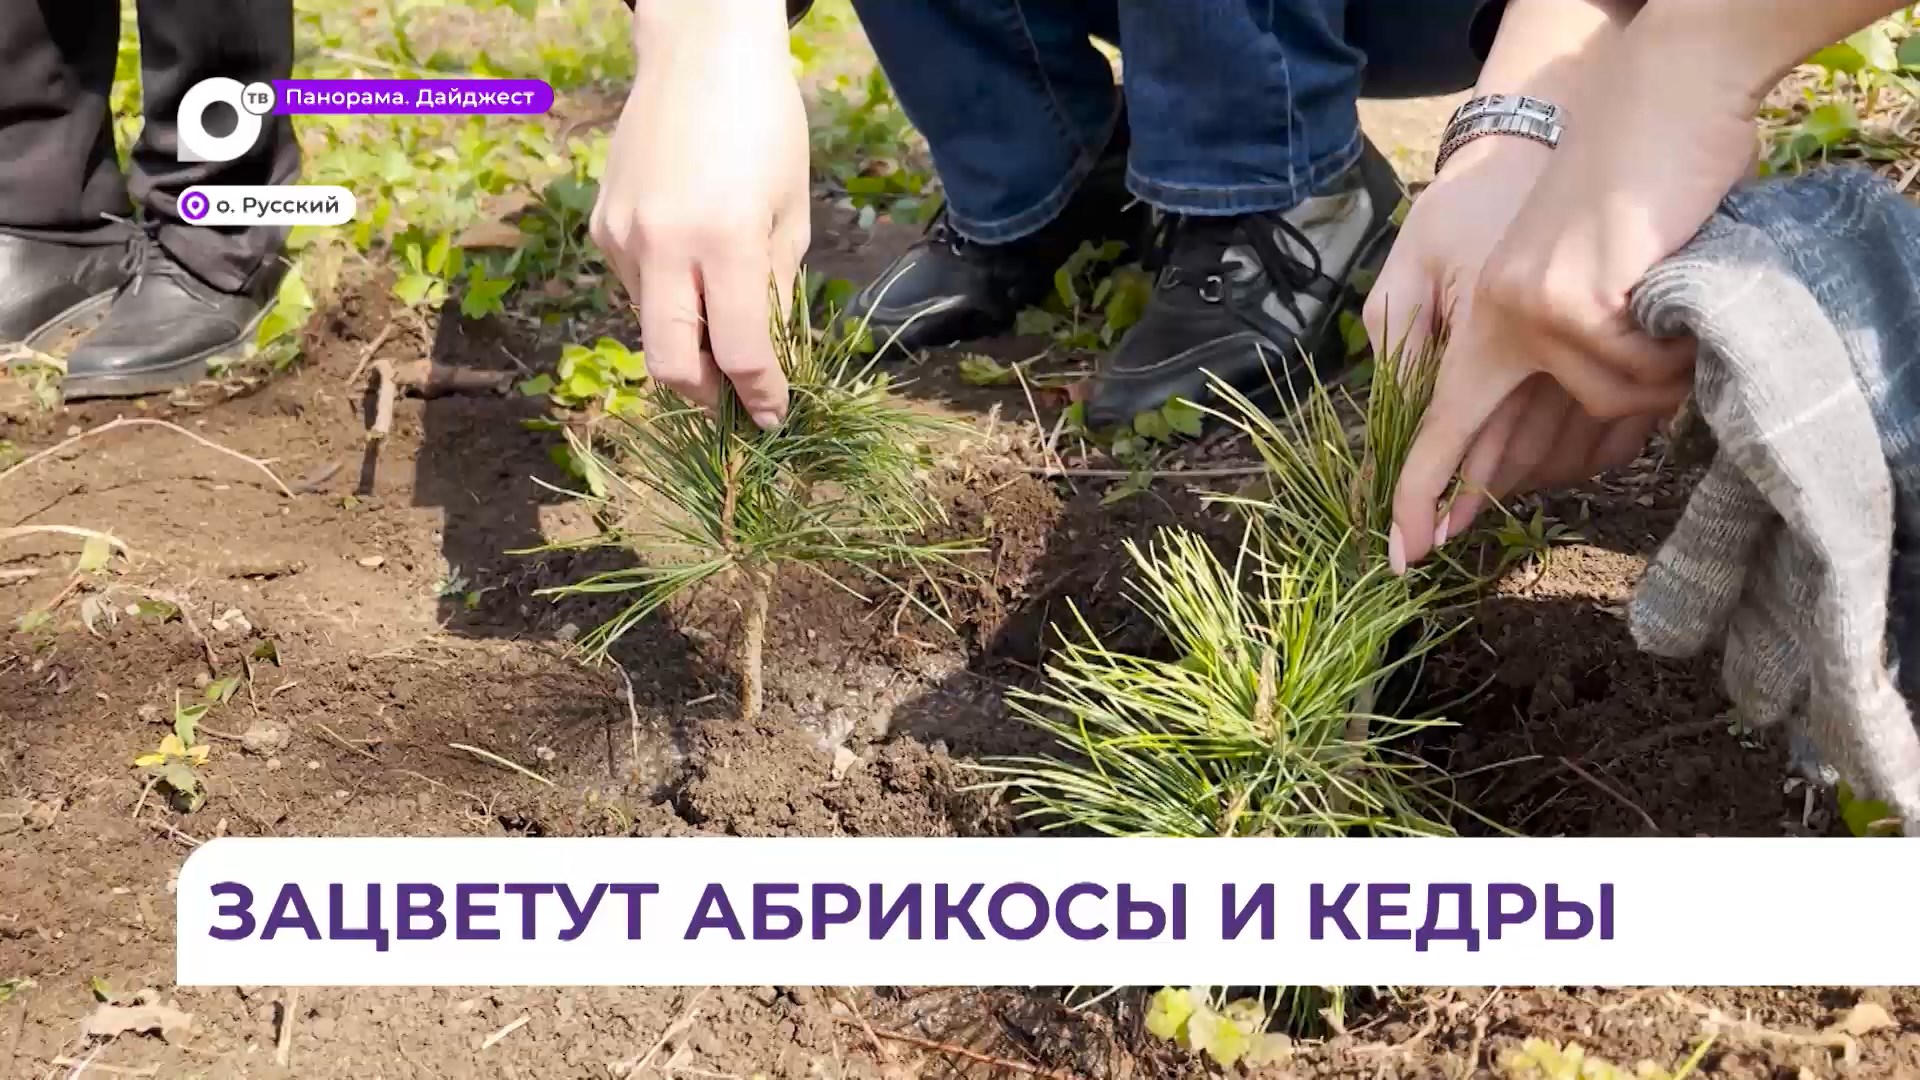 Студенты и волонтёры высаживают кедры и абрикосы во Владивостоке в память о погибших воинах